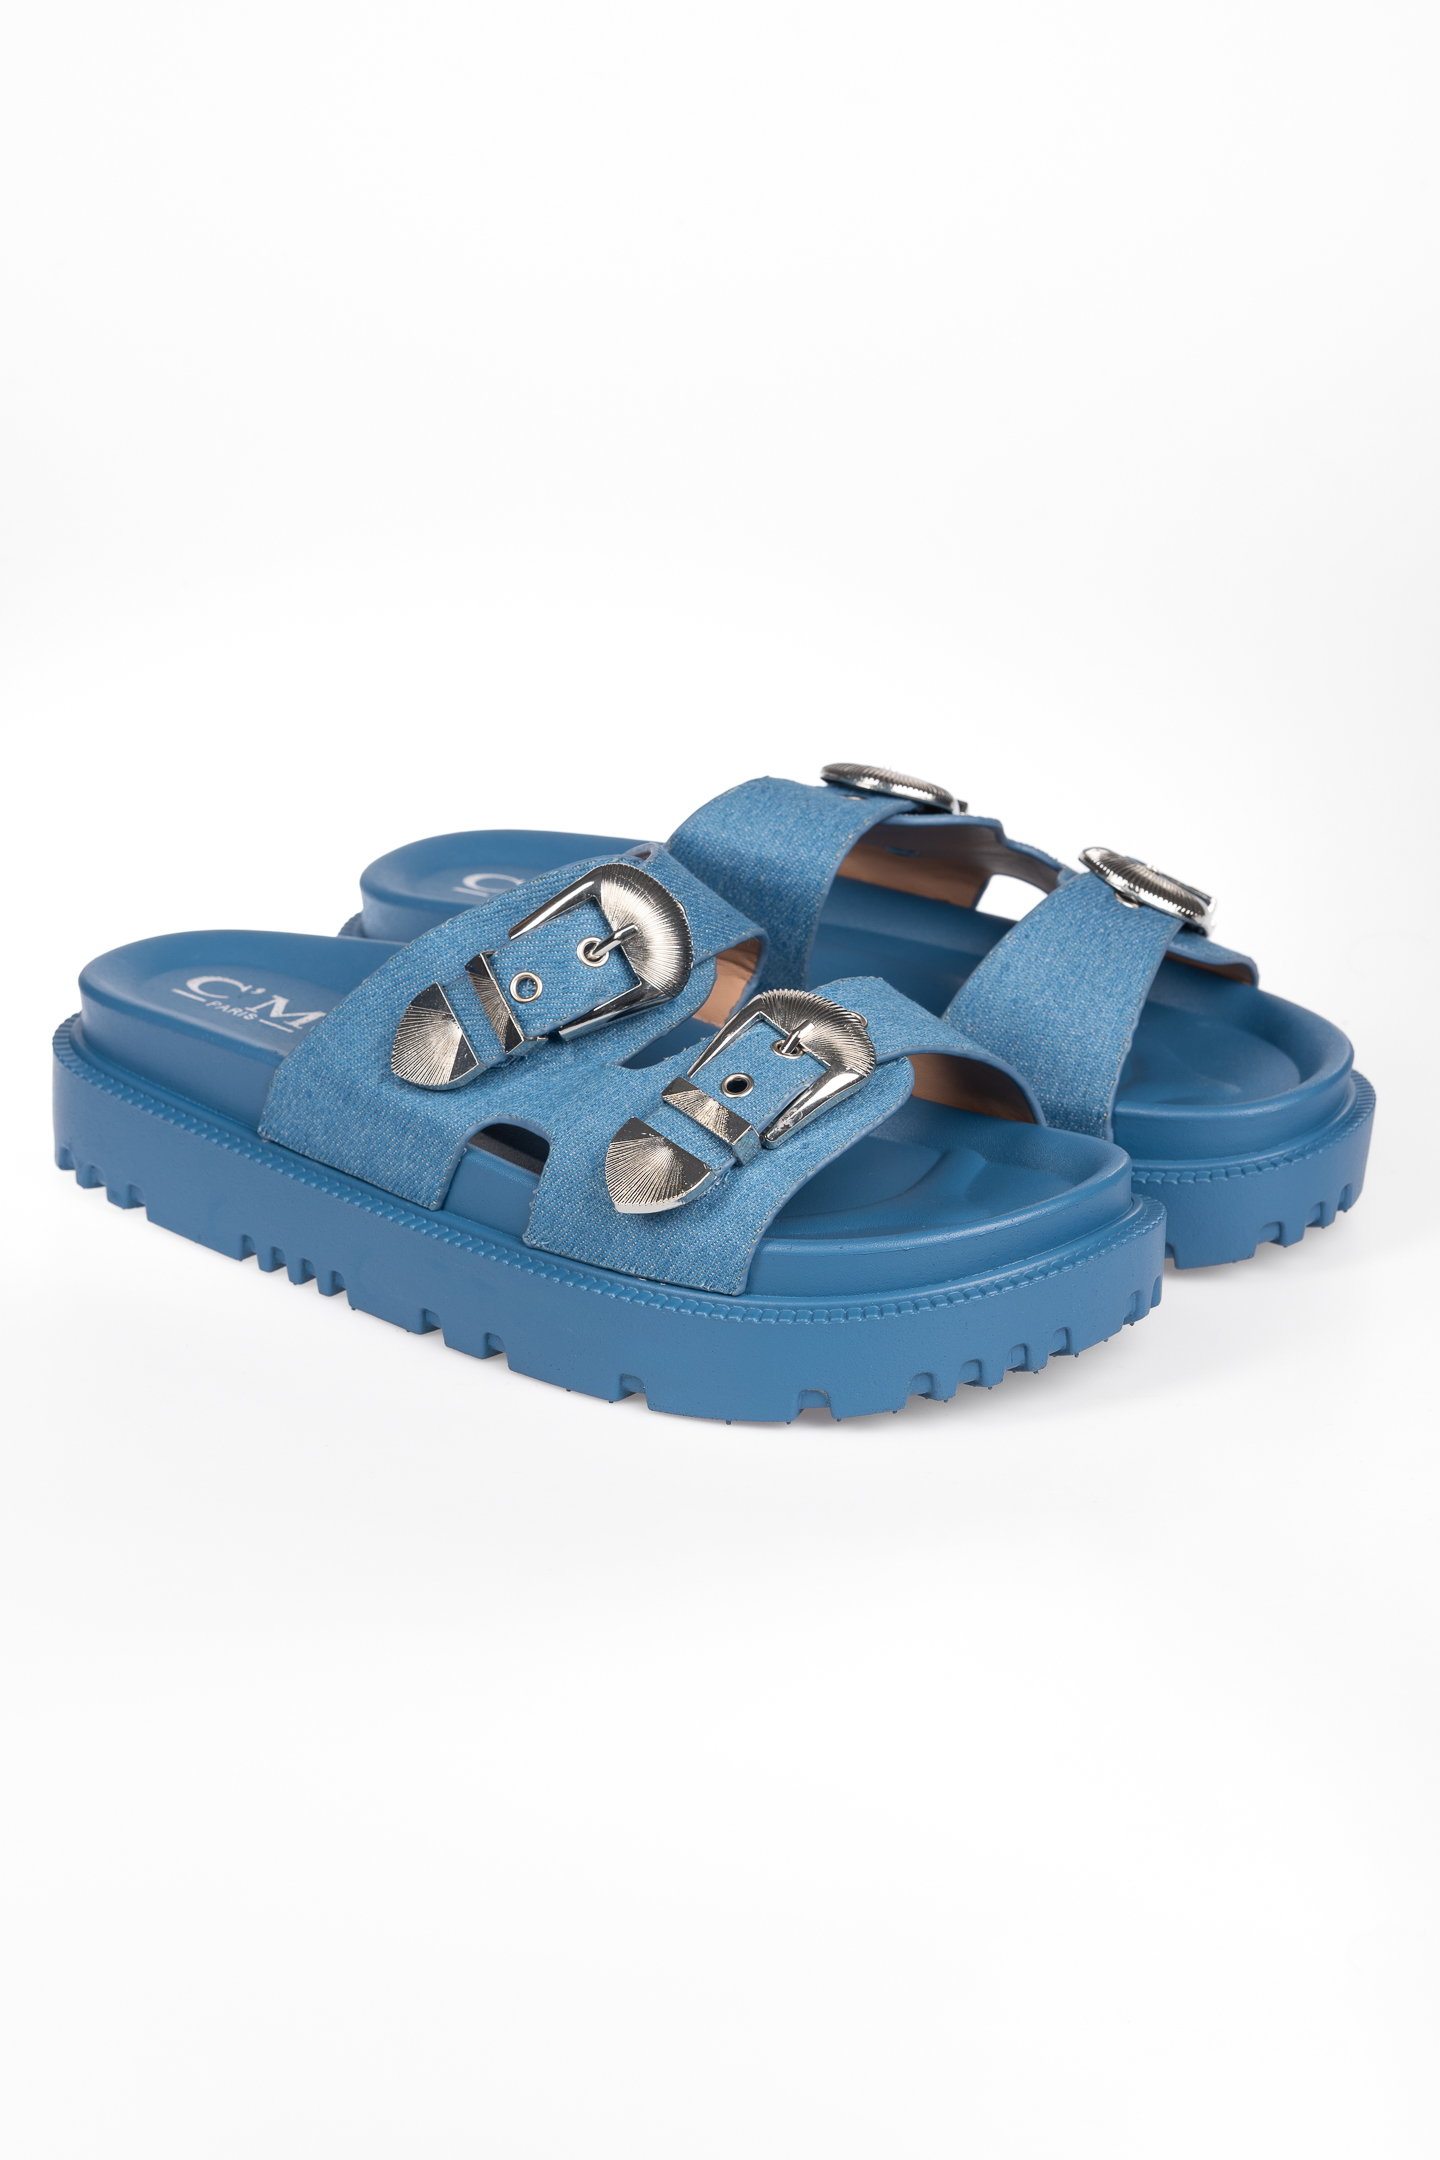 Παπούτσια > Σανδάλια Σανδάλια με ιδιαίτερες τόκες - Μπλε